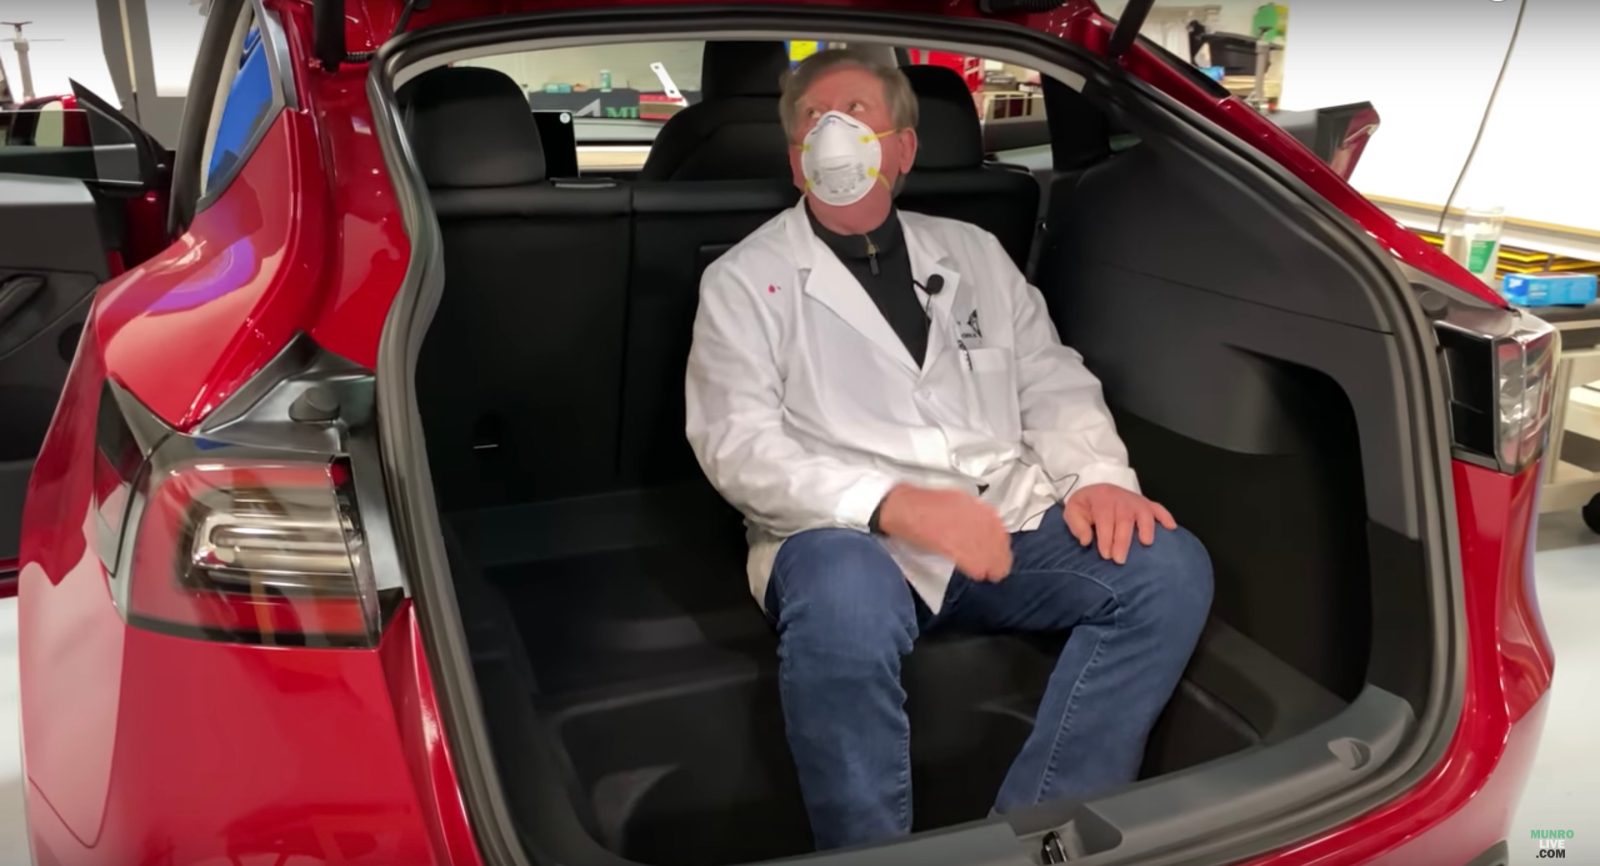 Tesla Model Y thirdrow seat might make more sense rearfacing — what